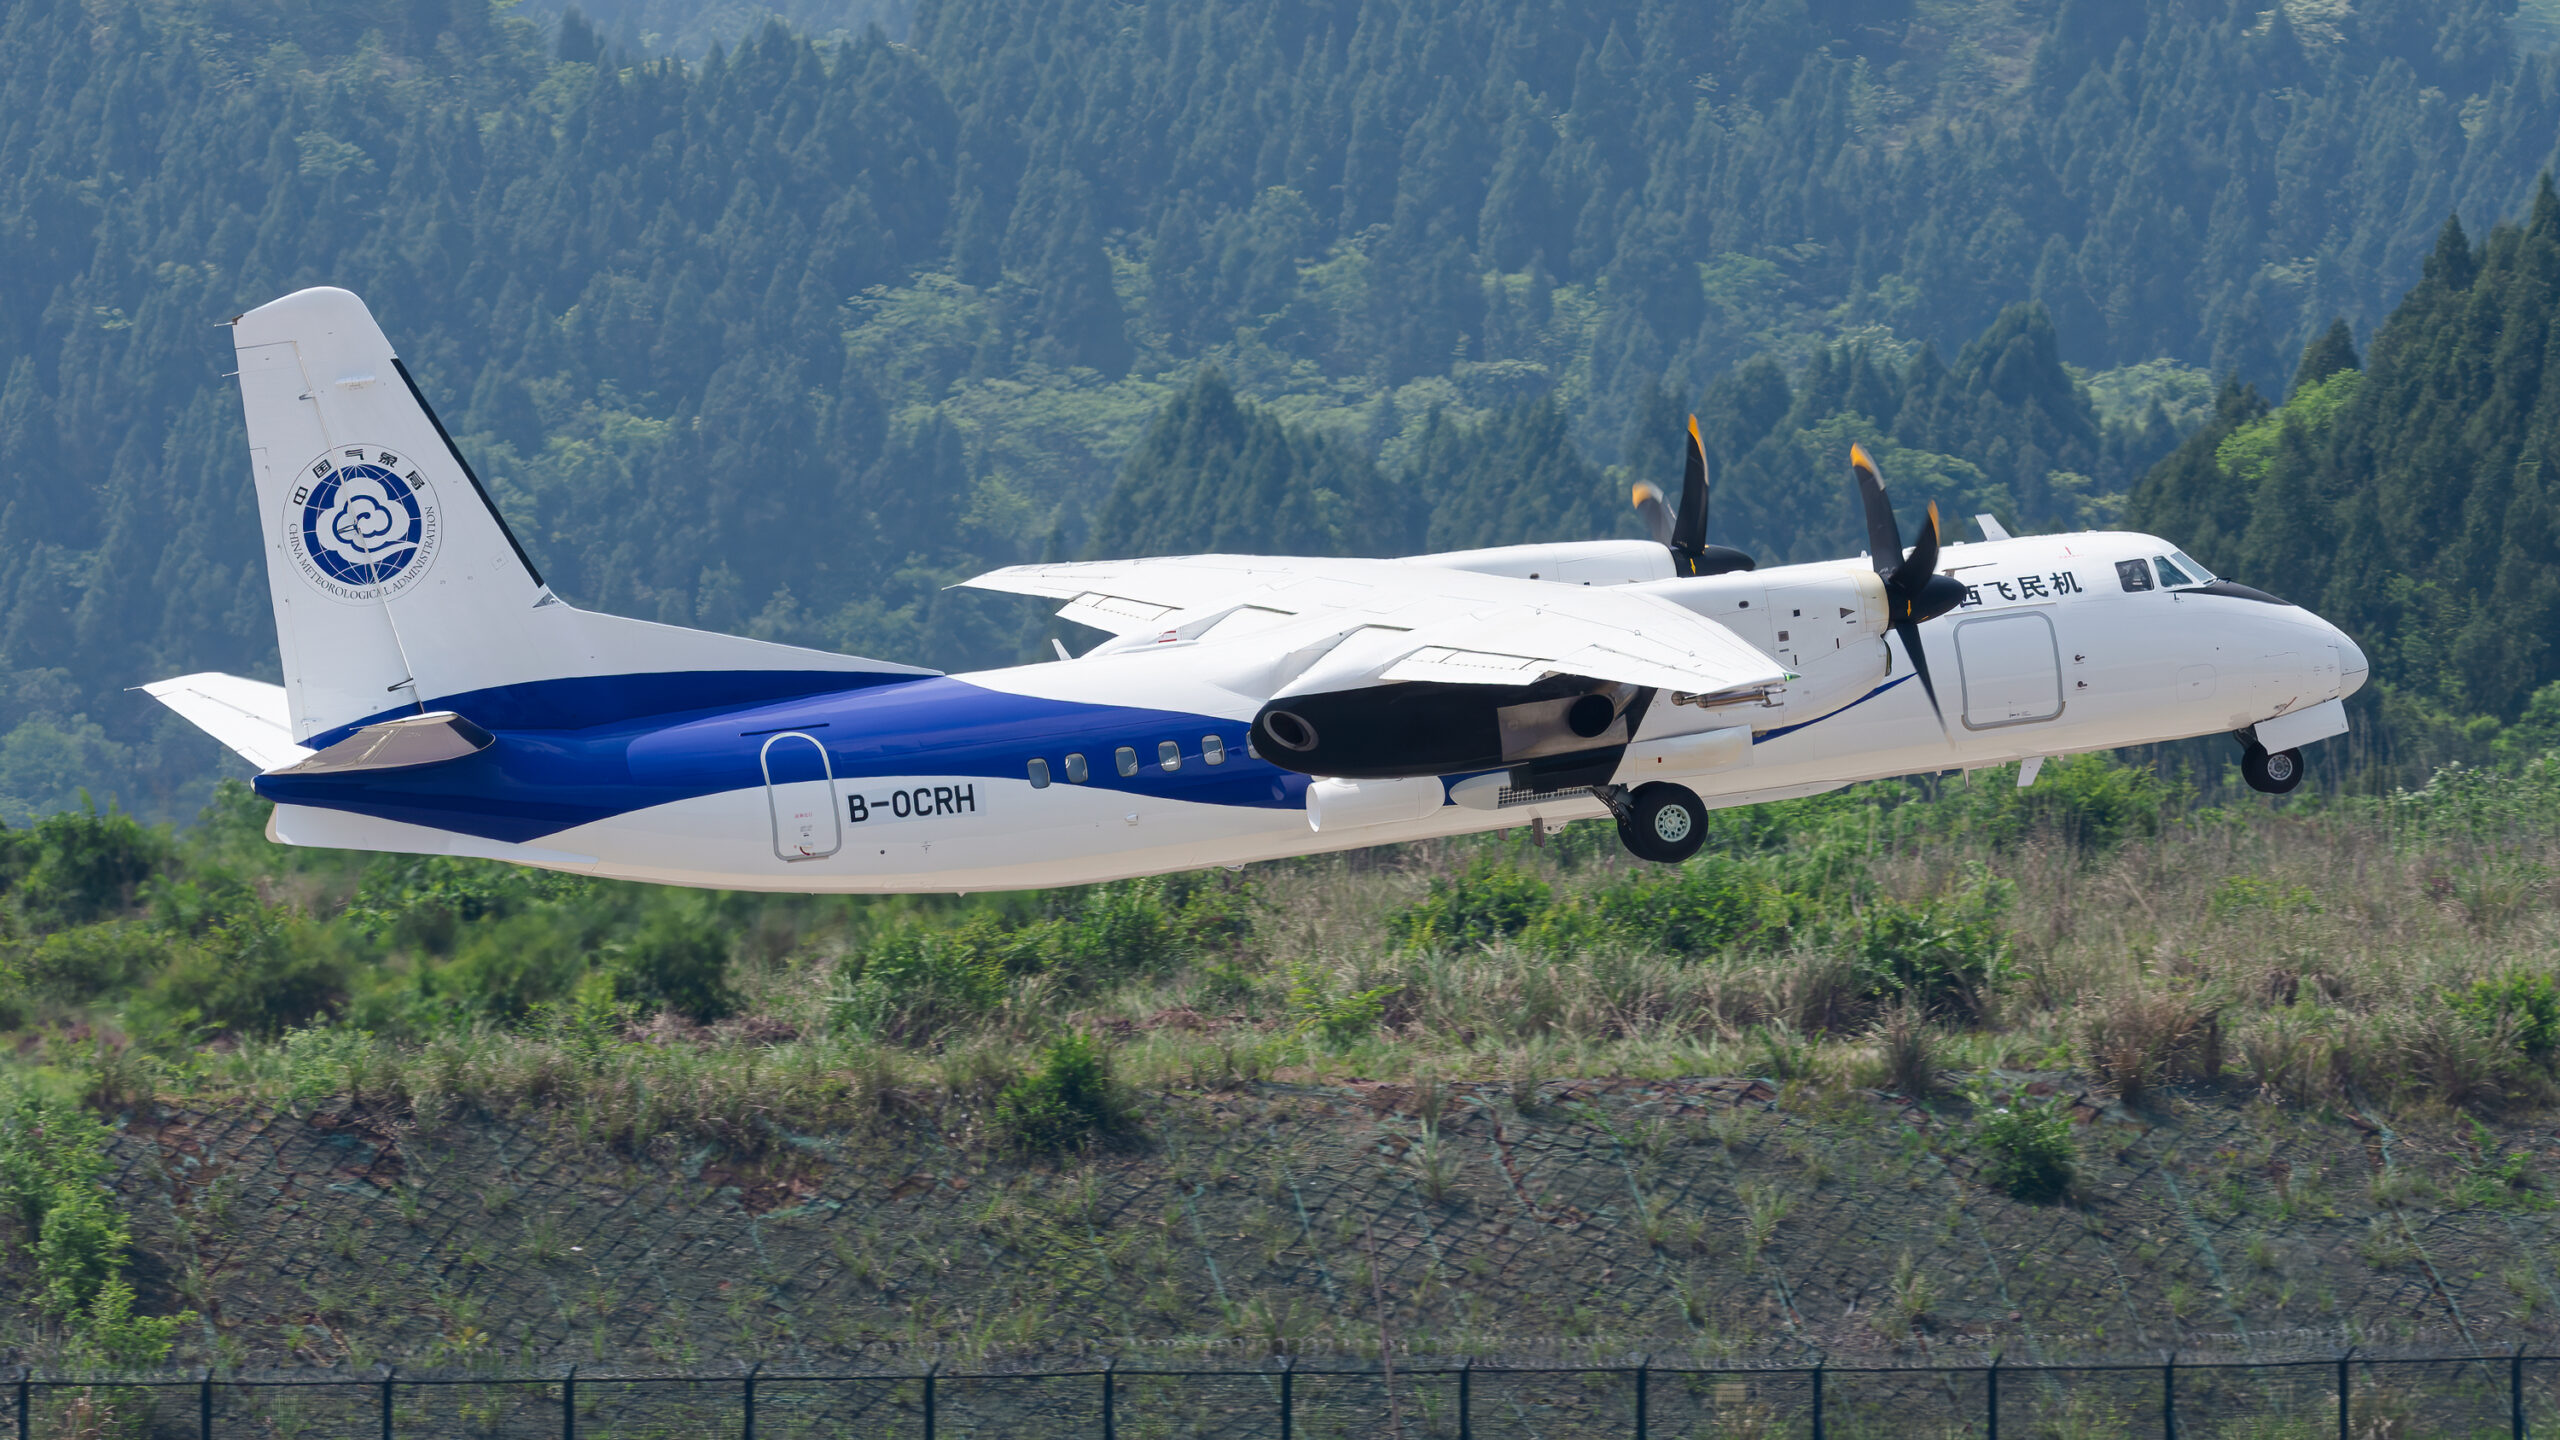 จีนพัฒนา 'เครื่องบินดัดแปรสภาพอากาศ MA-60' รุ่นใหม่ หนุนงานอุตุนิยมวิทยา